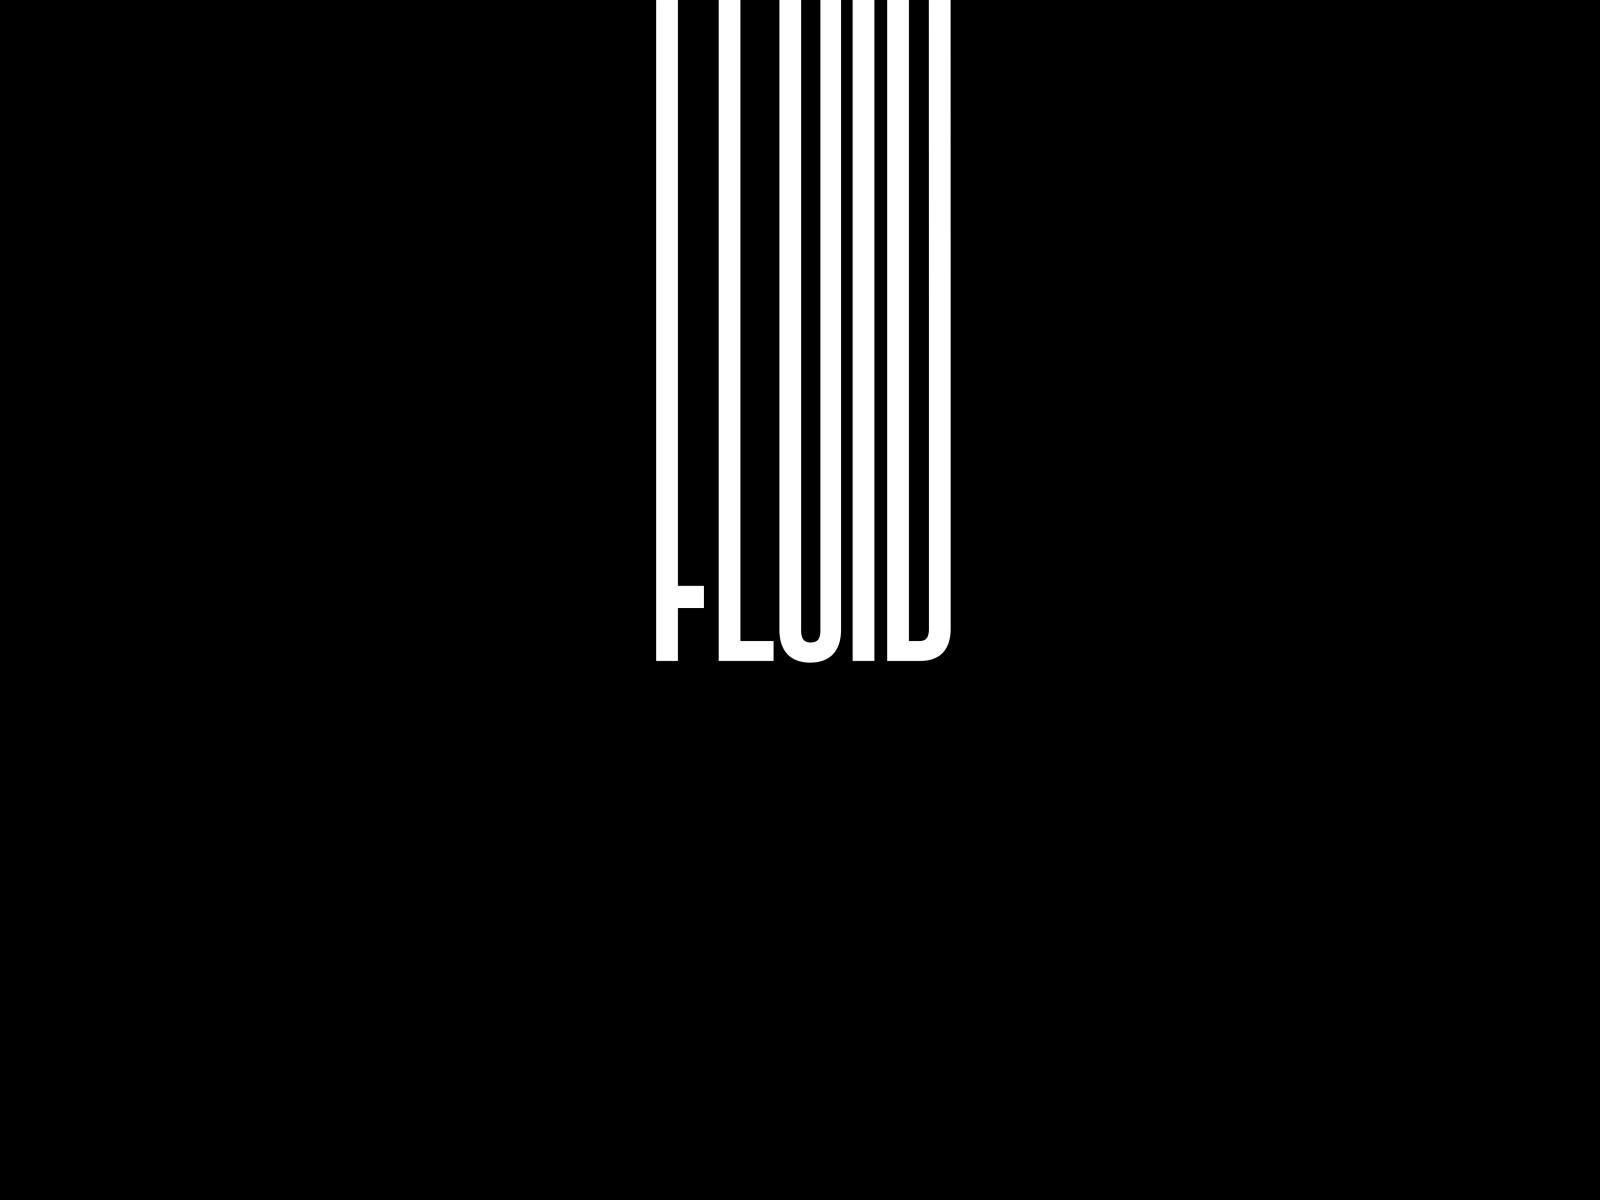 Fluid | TYPO ANIMATION animation fluid typo typo animation typography